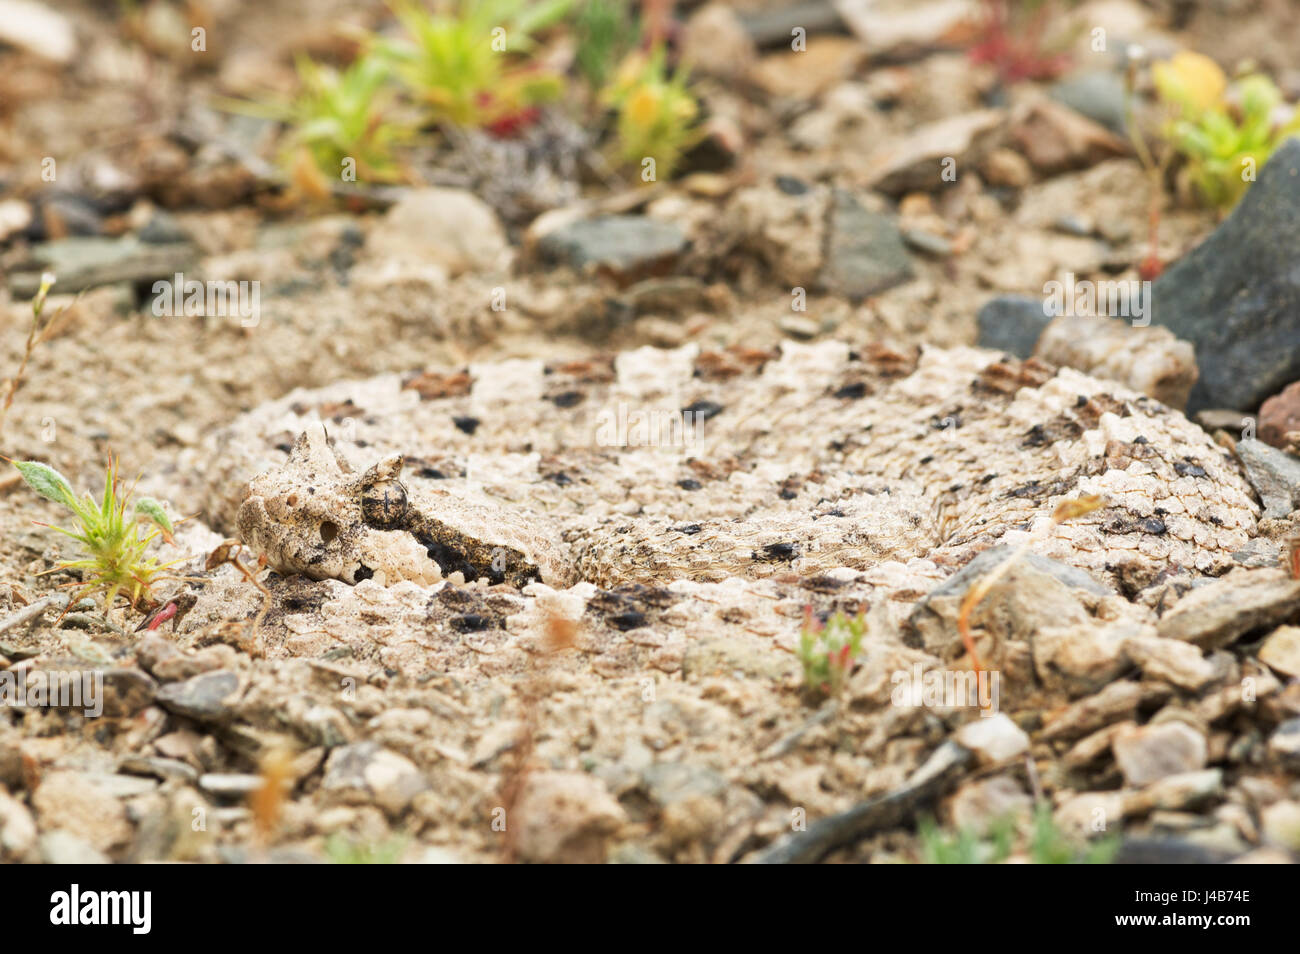 Nahaufnahme der Mojave-Wüste Sidewinder Klapperschlange oder Crotalus Cerastes aufgerollt in einer Senke im Kies Stockfoto